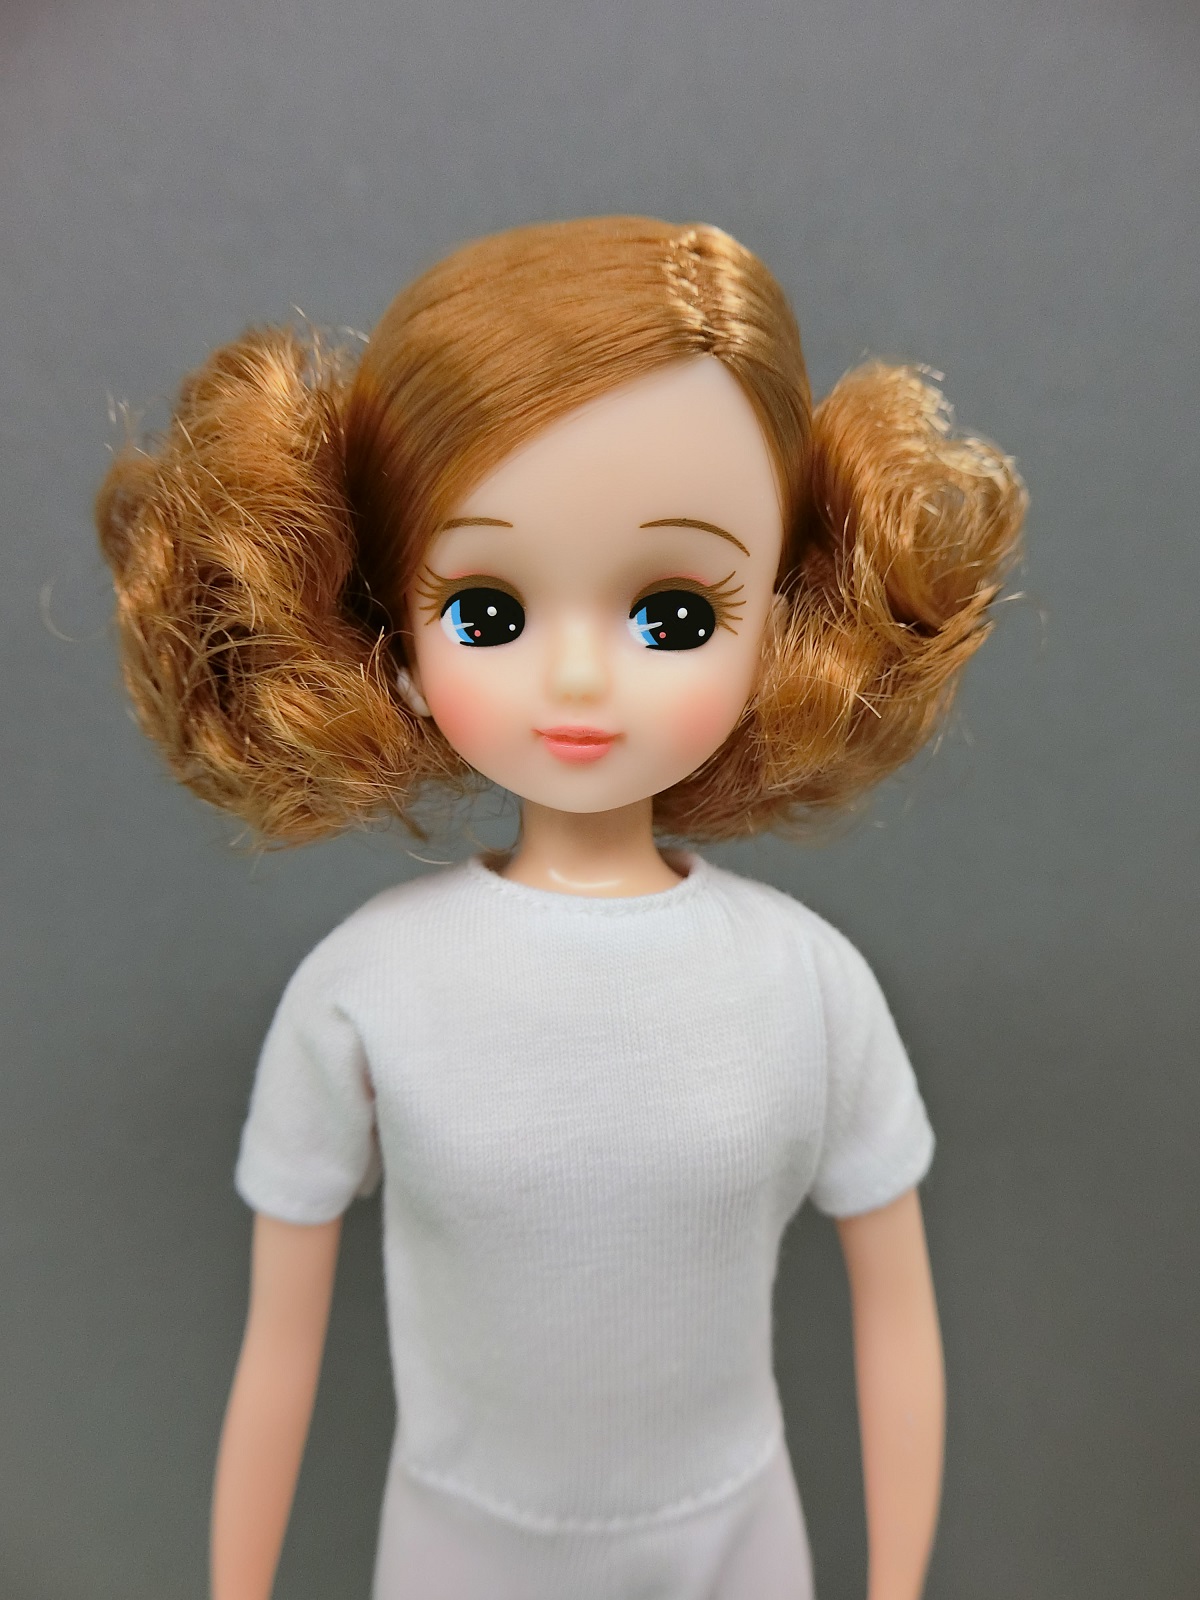 高価値 リカちゃんキャッスル オリジナルコレクションモデルリカちゃん-1 おもちゃ/人形